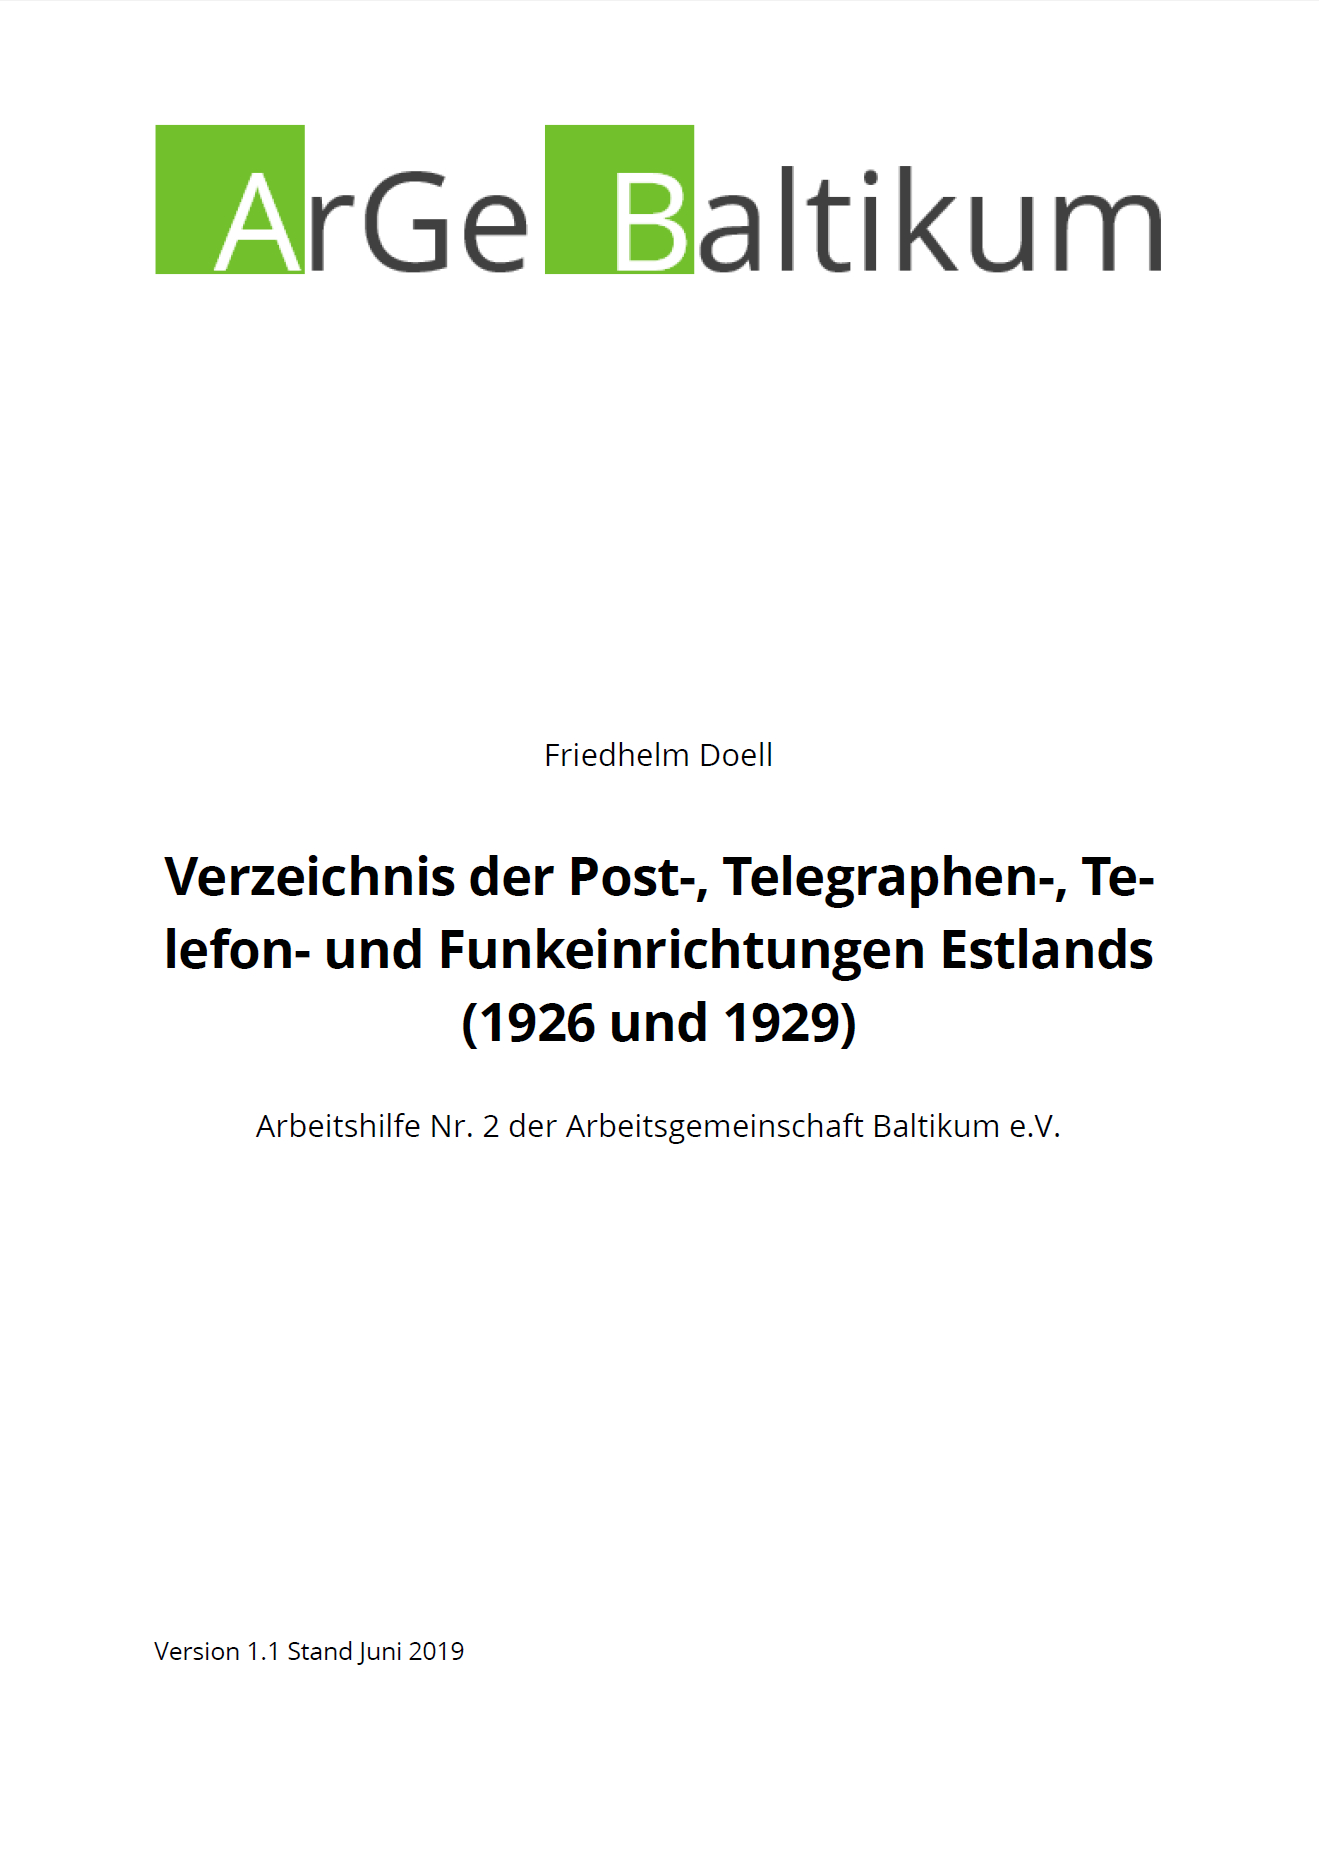 Februar 2019: Veröffentlichung der Arbeitshilfe Nr.2: Verzeichnis der Post-, Telegraphen-, Telefon- und Funkeinrichtungen Estlands (1926 und 1929)